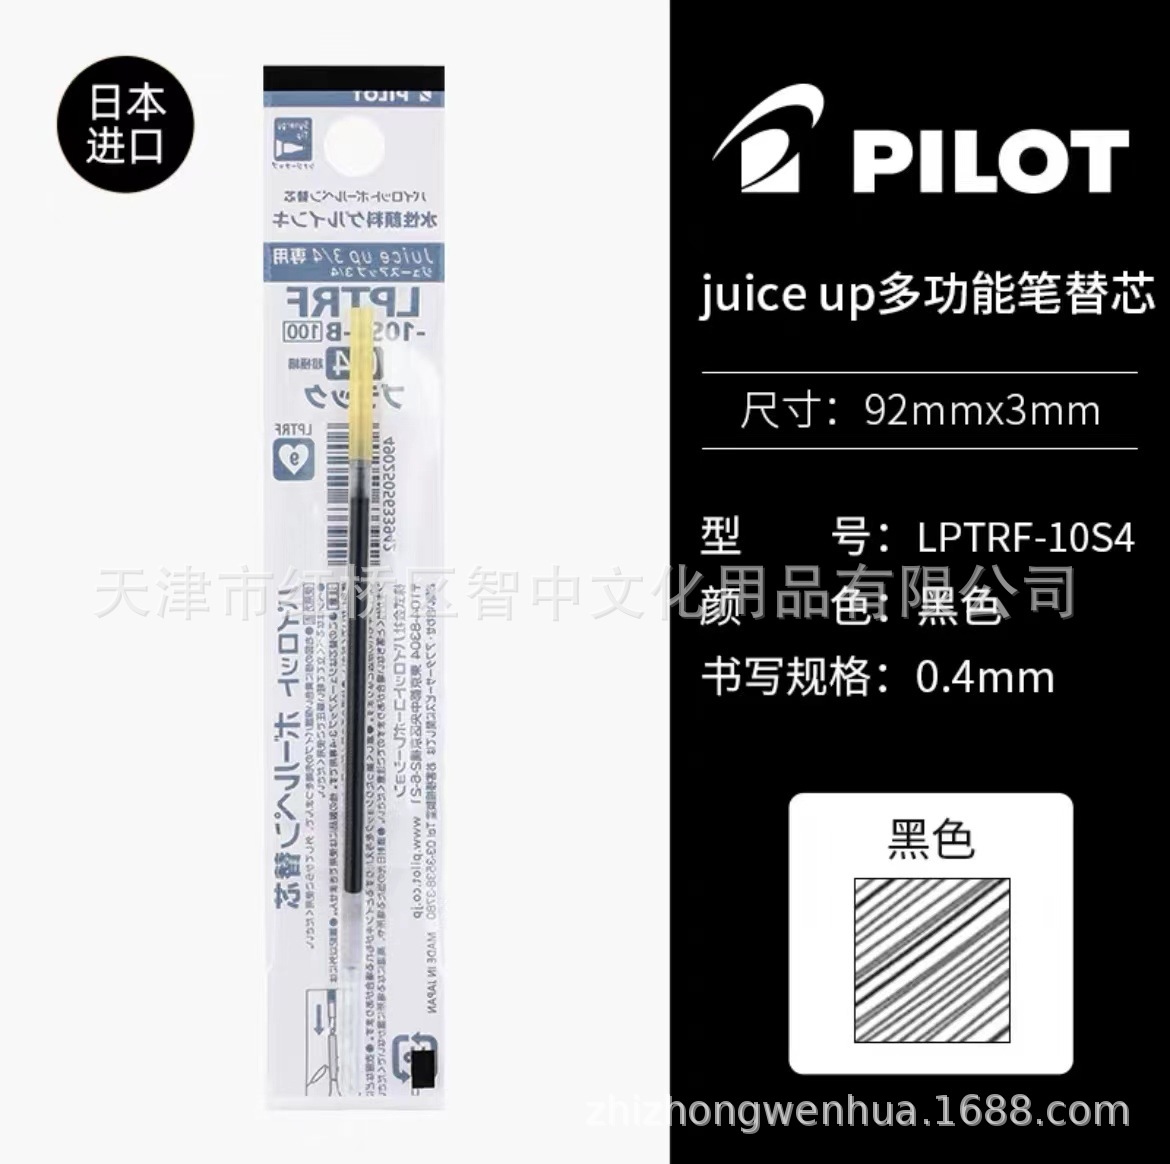 Japan PILOT baccarat juice up multi-color pen 0.4mm pearlescent color limited gourd head 3 colors 4 colors neutral pen